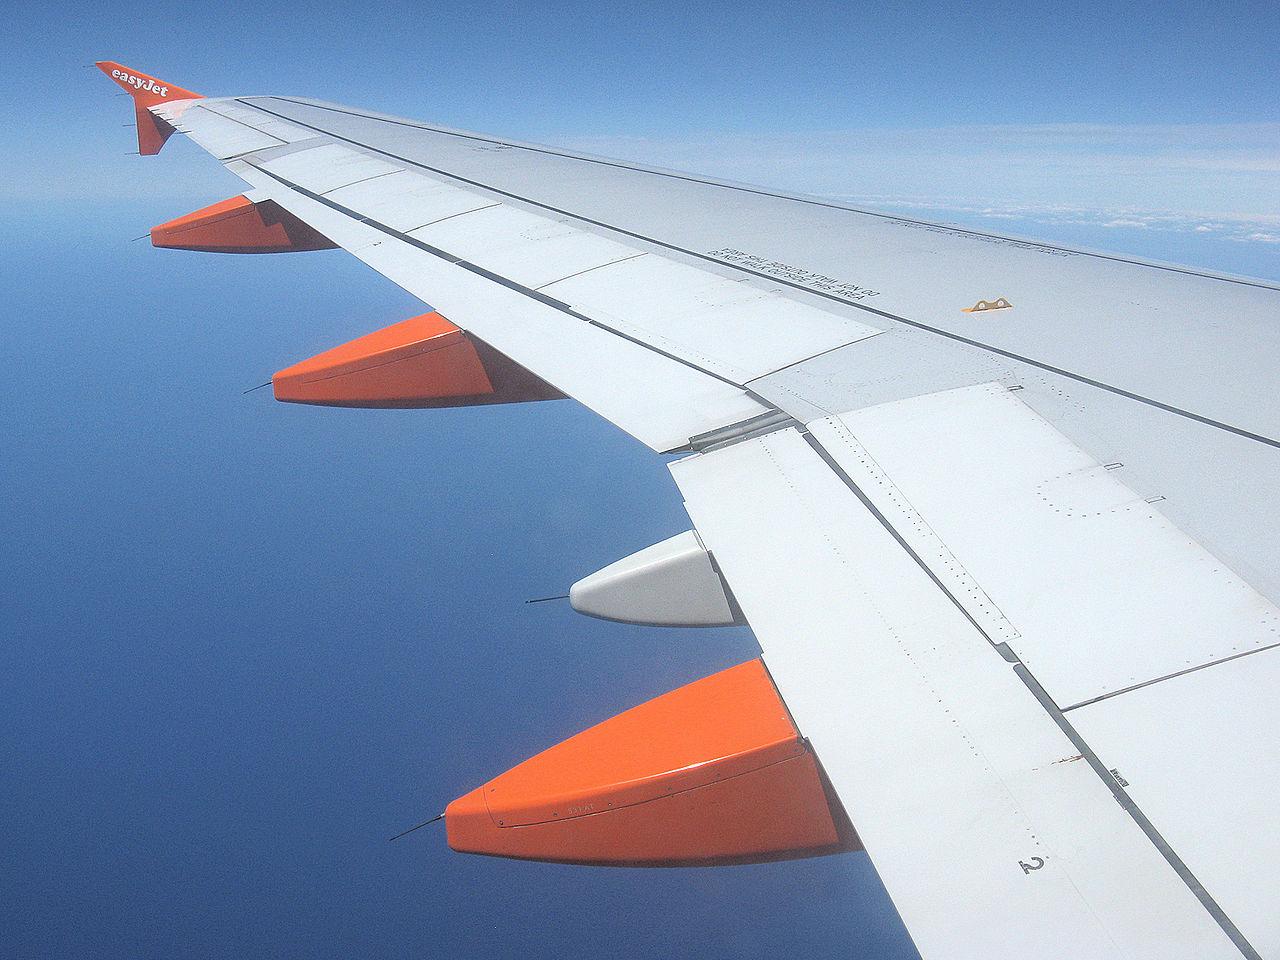 空客A320机翼图片